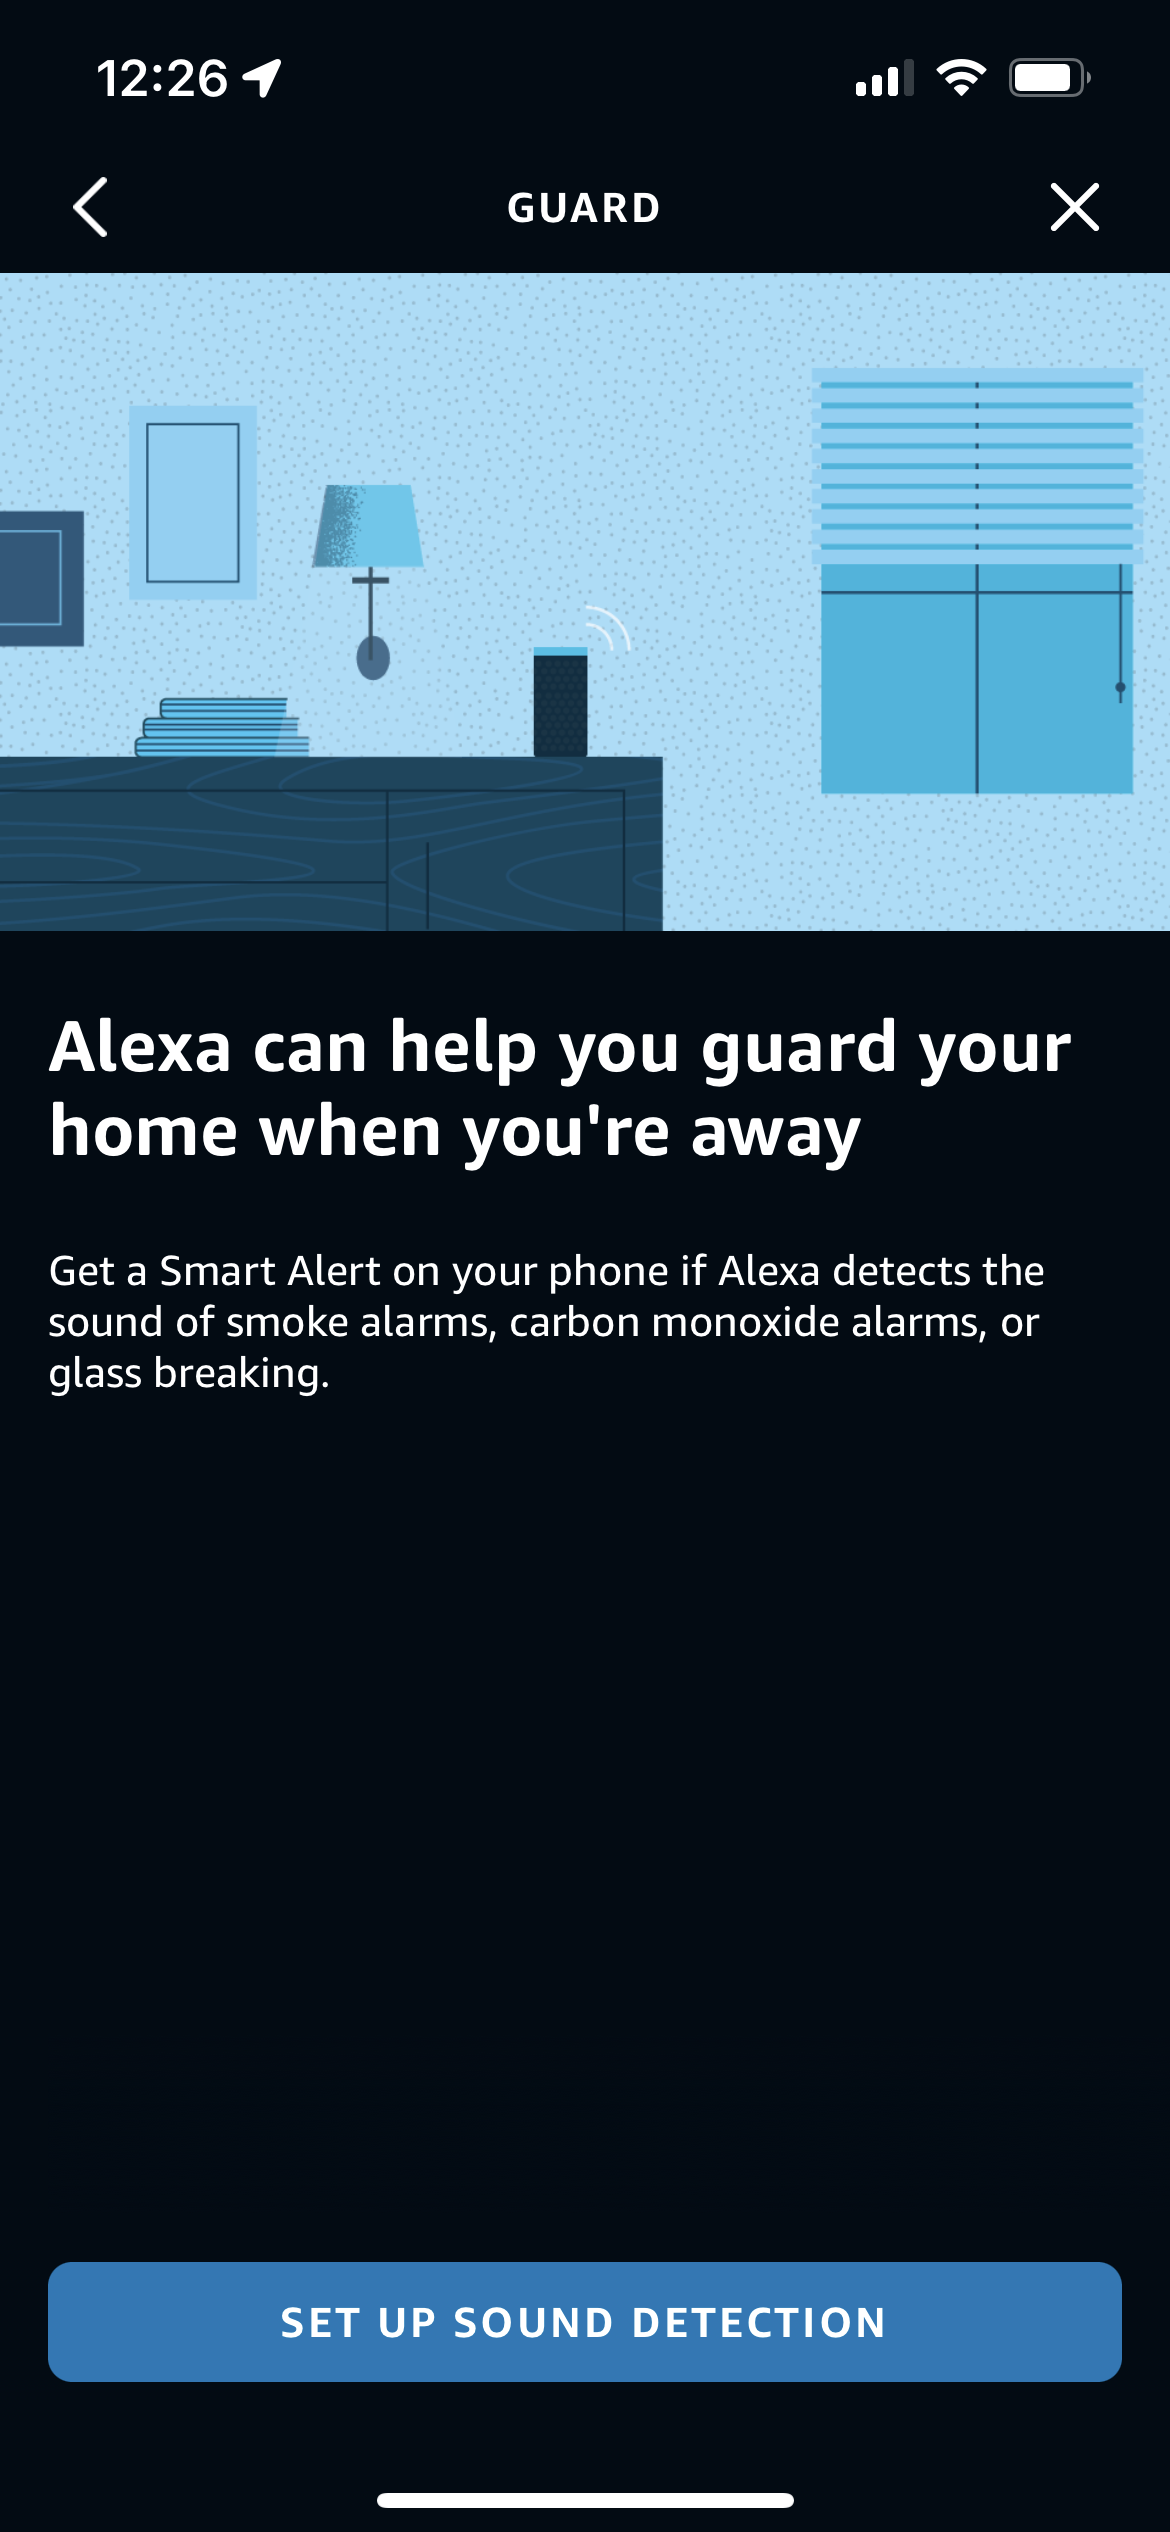 The Alexa Guard setup wizard